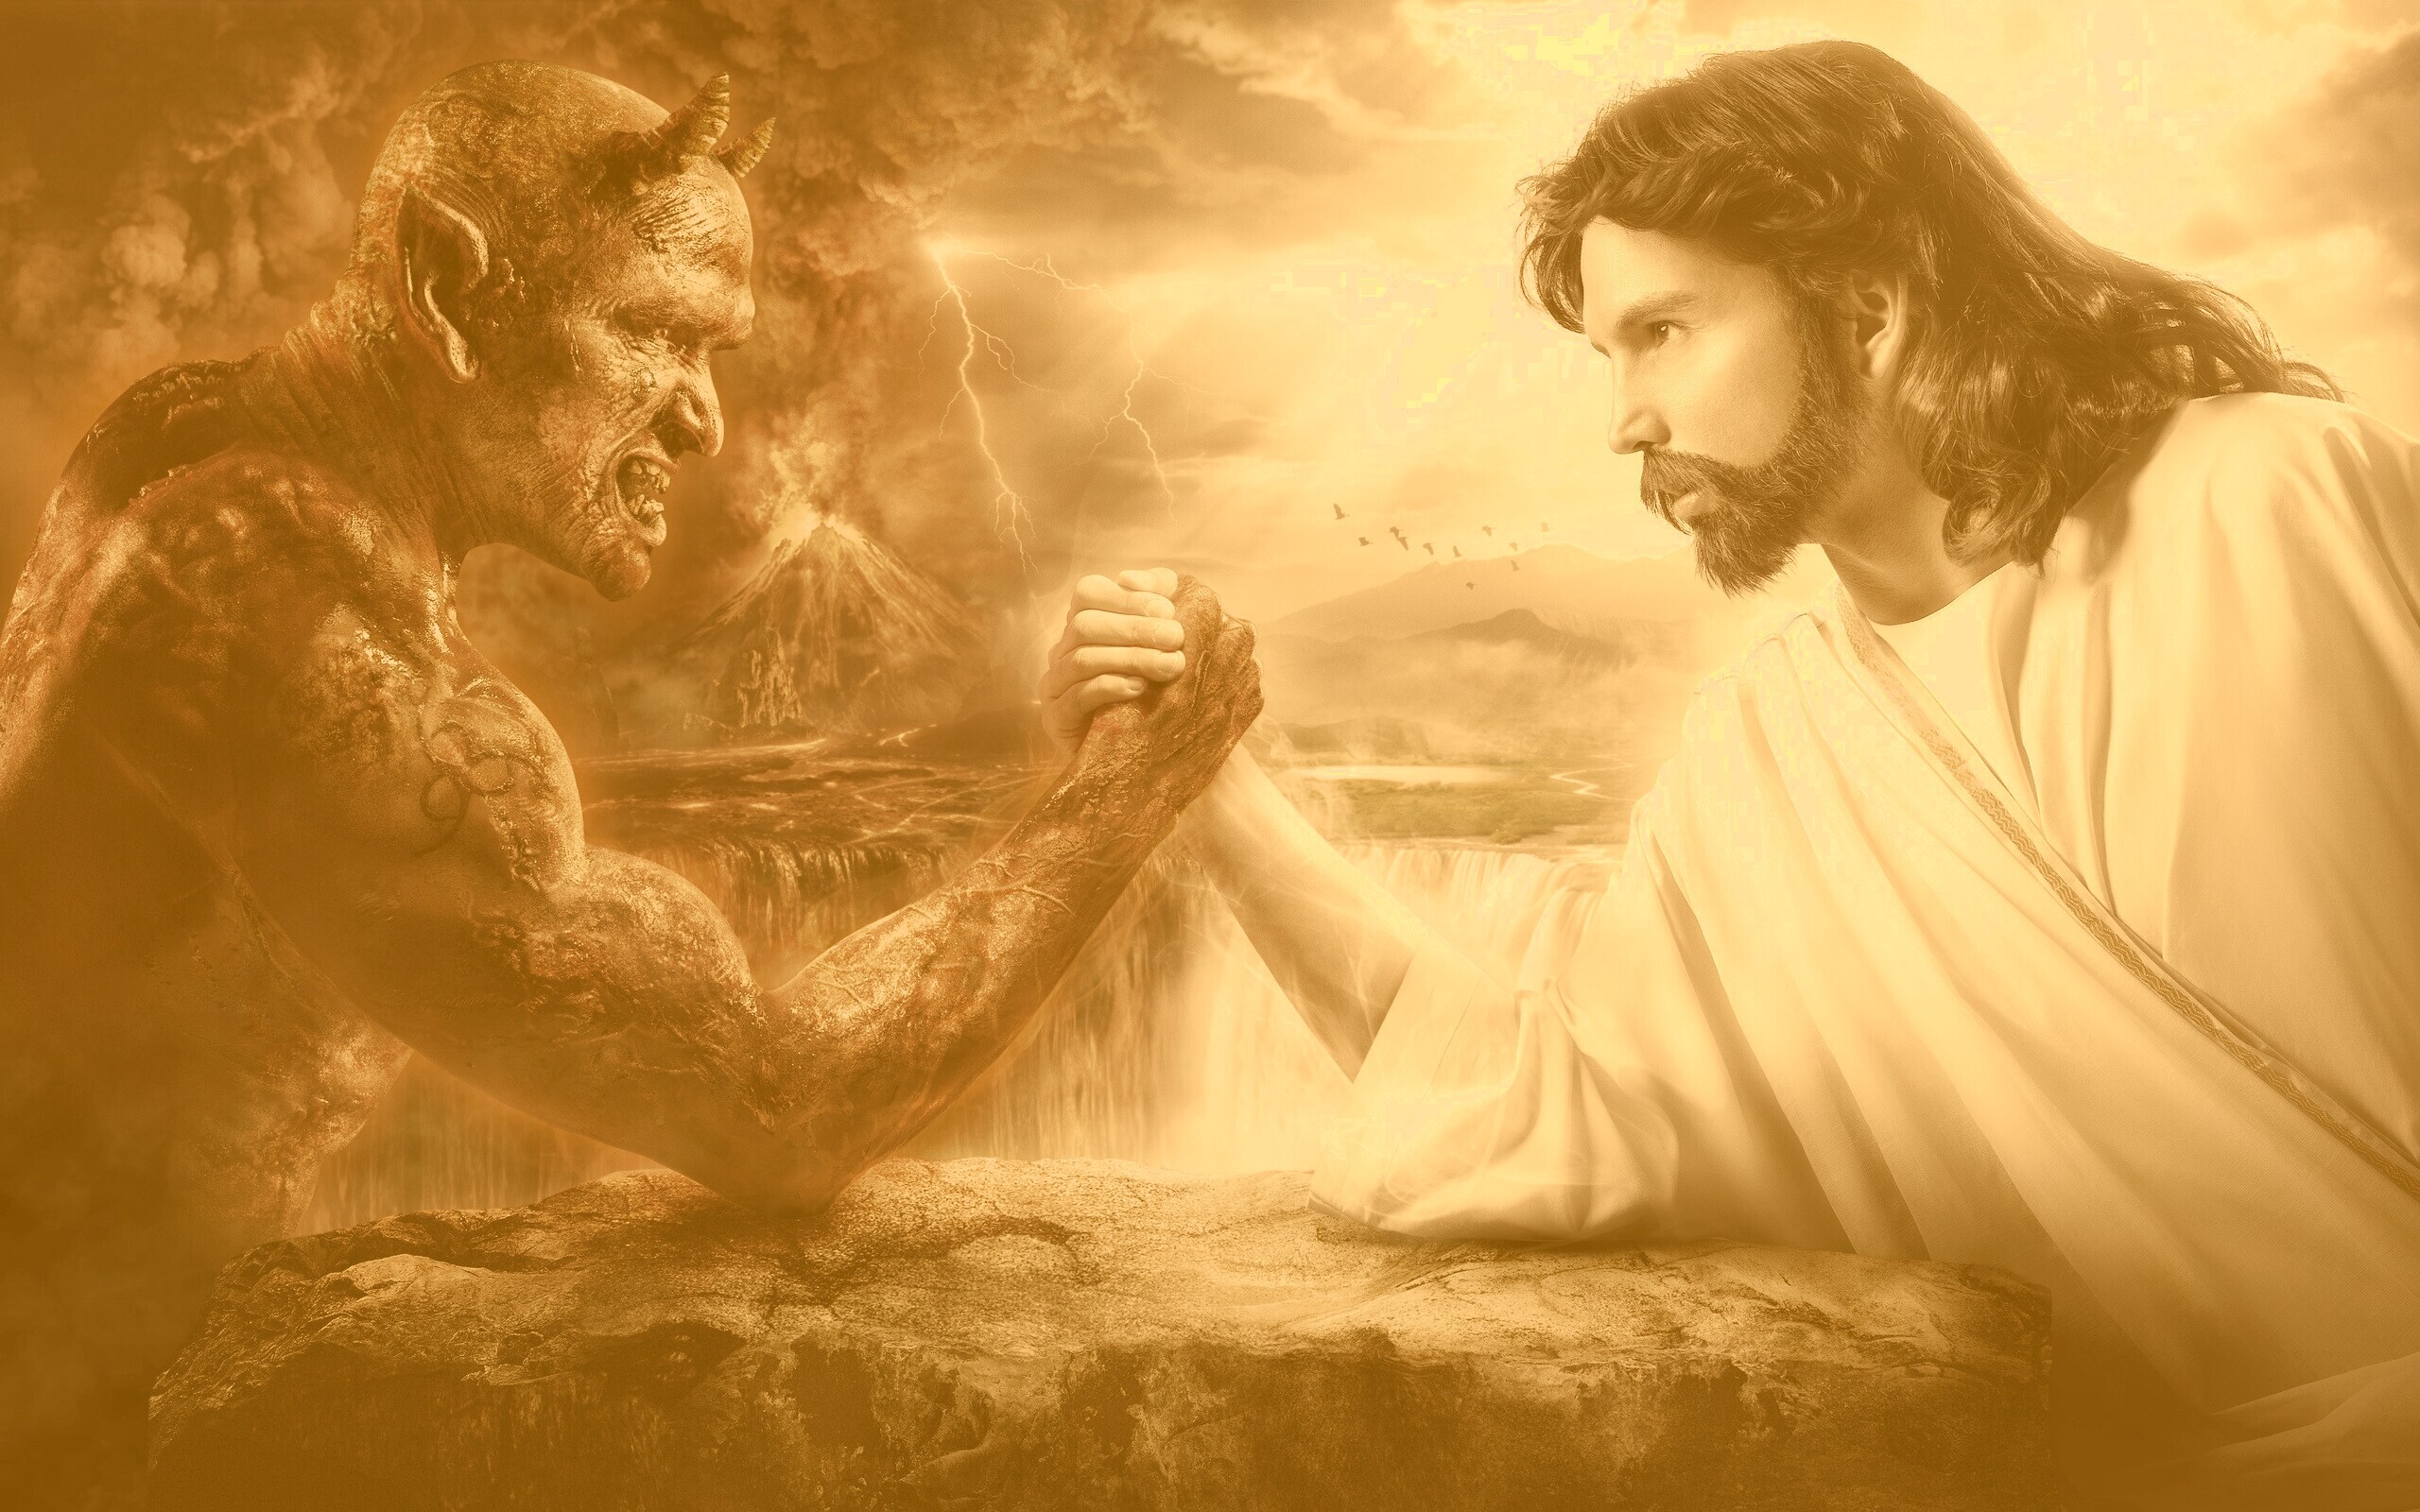 А поле битвы сердца людей. " Иисус. Бог и человек". ( Jesus).. Иисус против дьявола. Бог против сатаны.